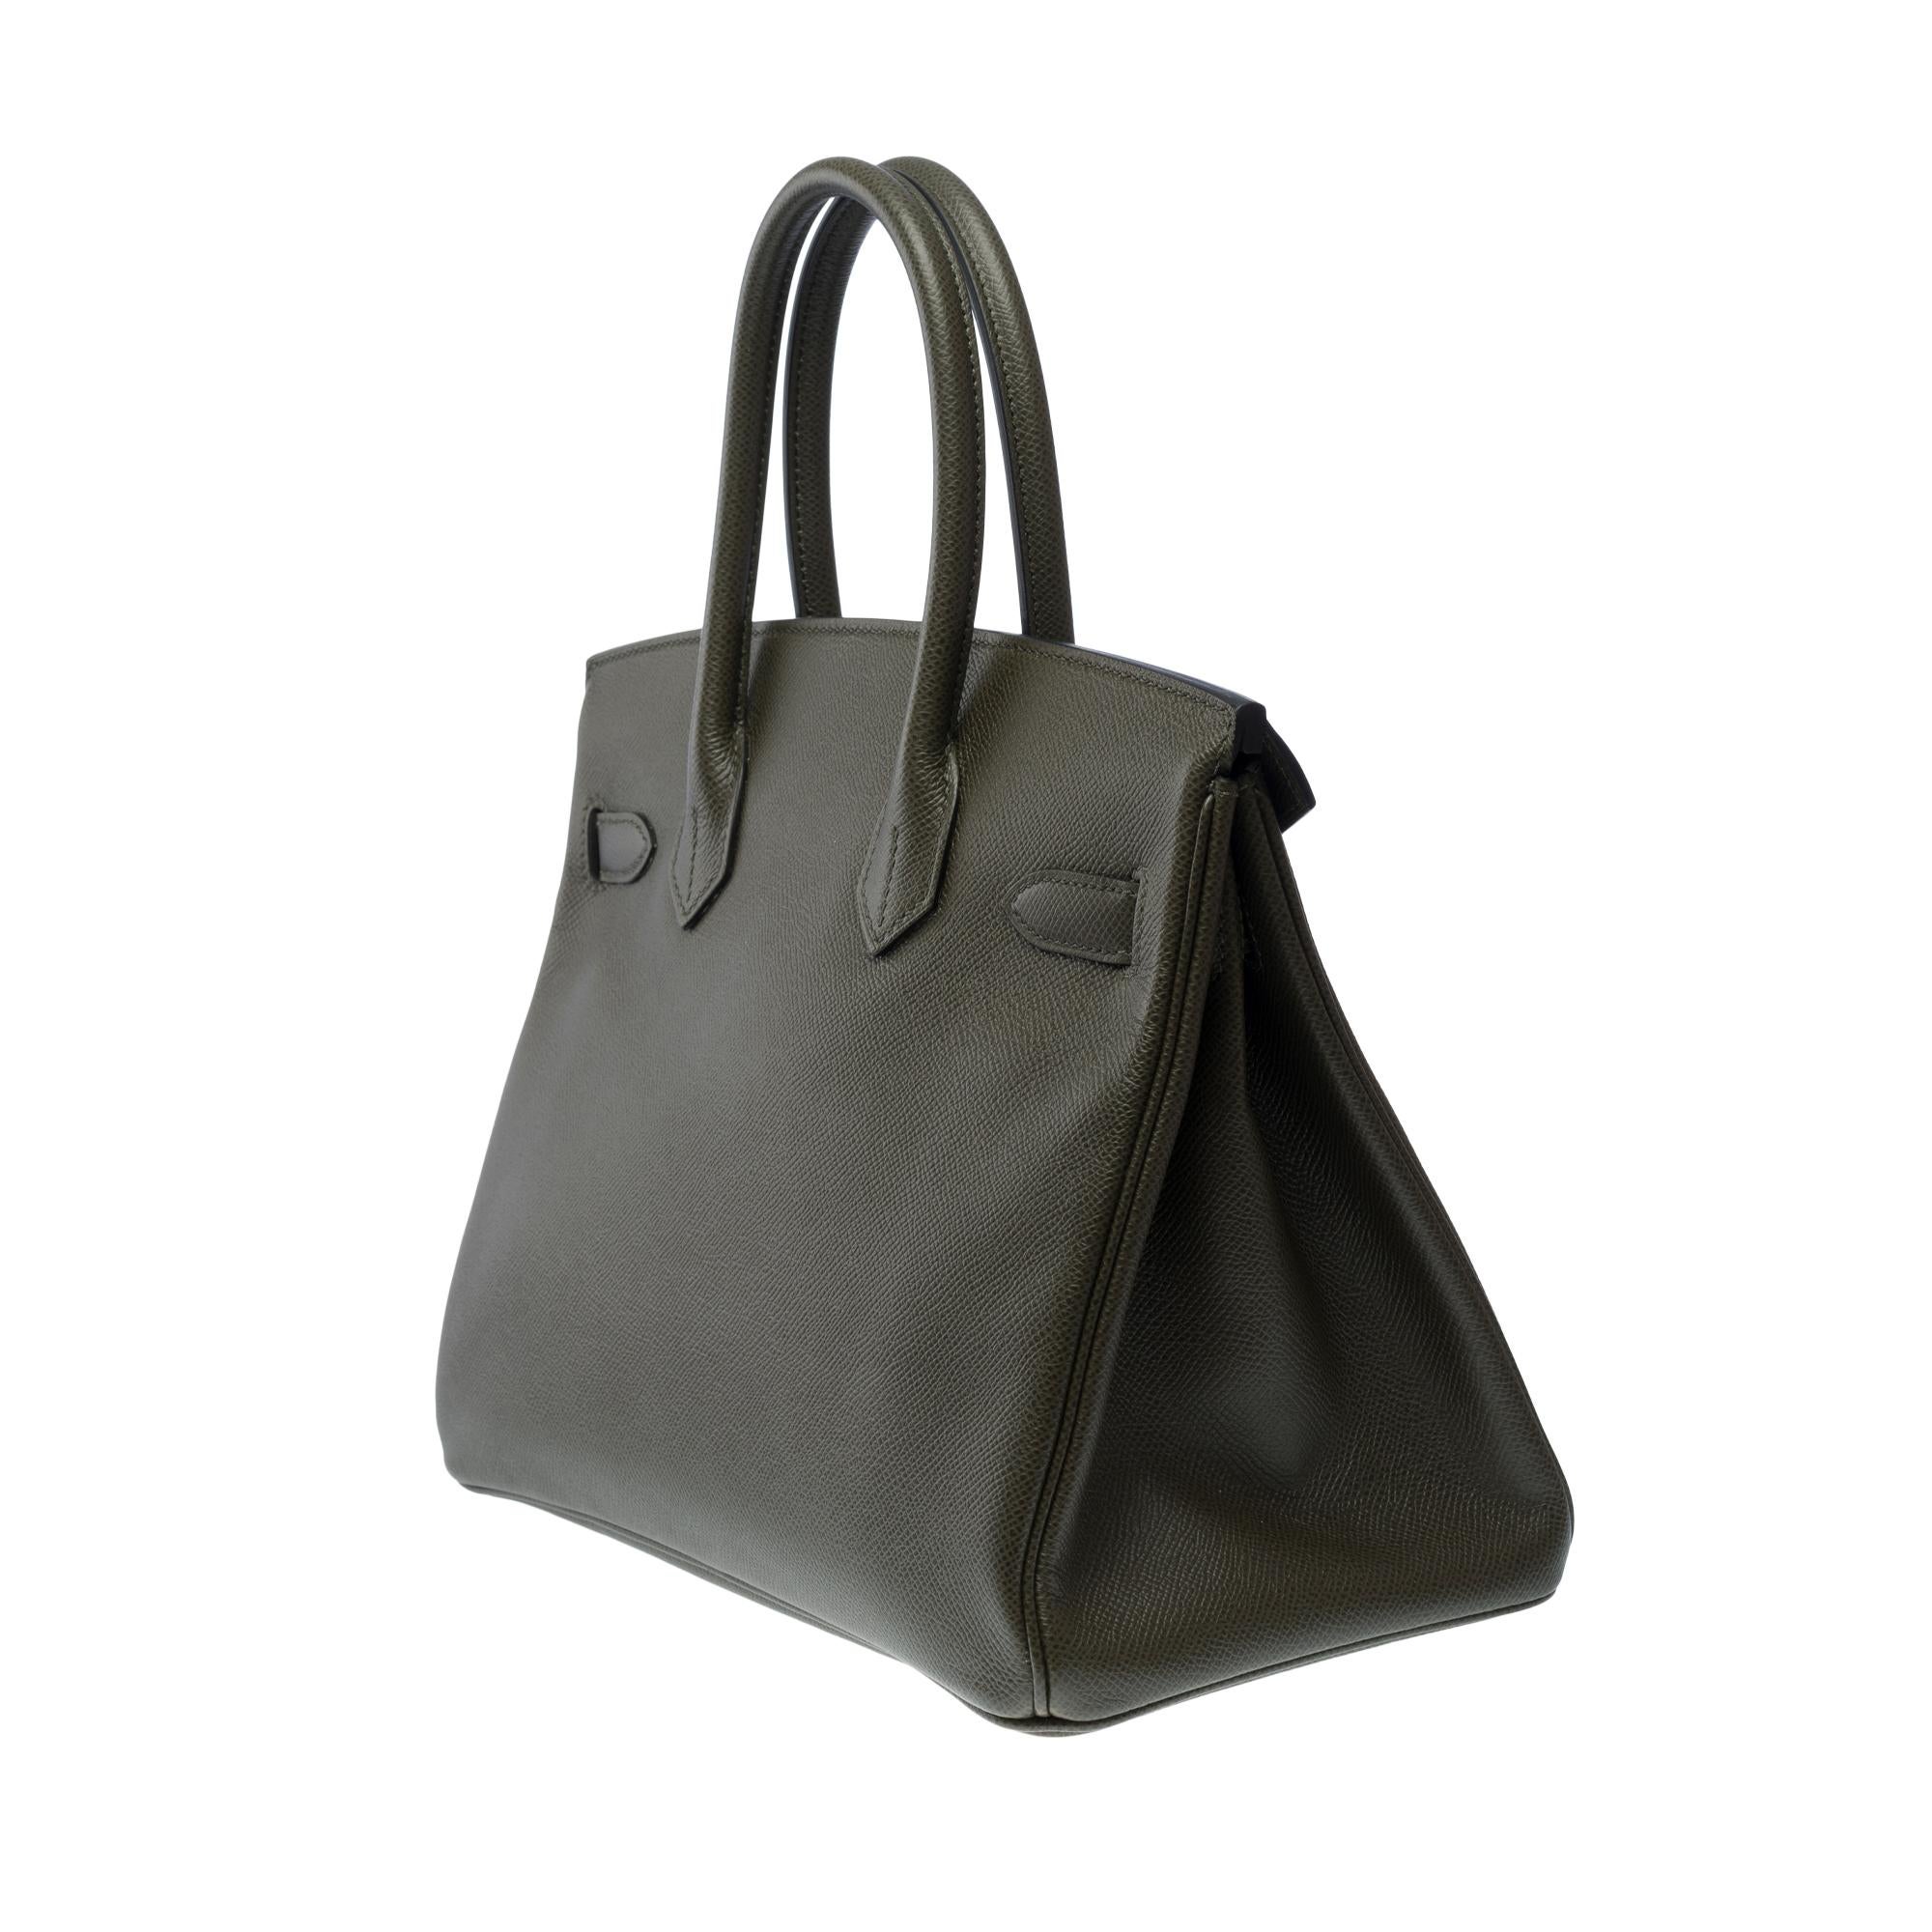 Splendid Hermes Birkin 30 handbag in Vert de Gris Epsom leather, SHW For Sale 1